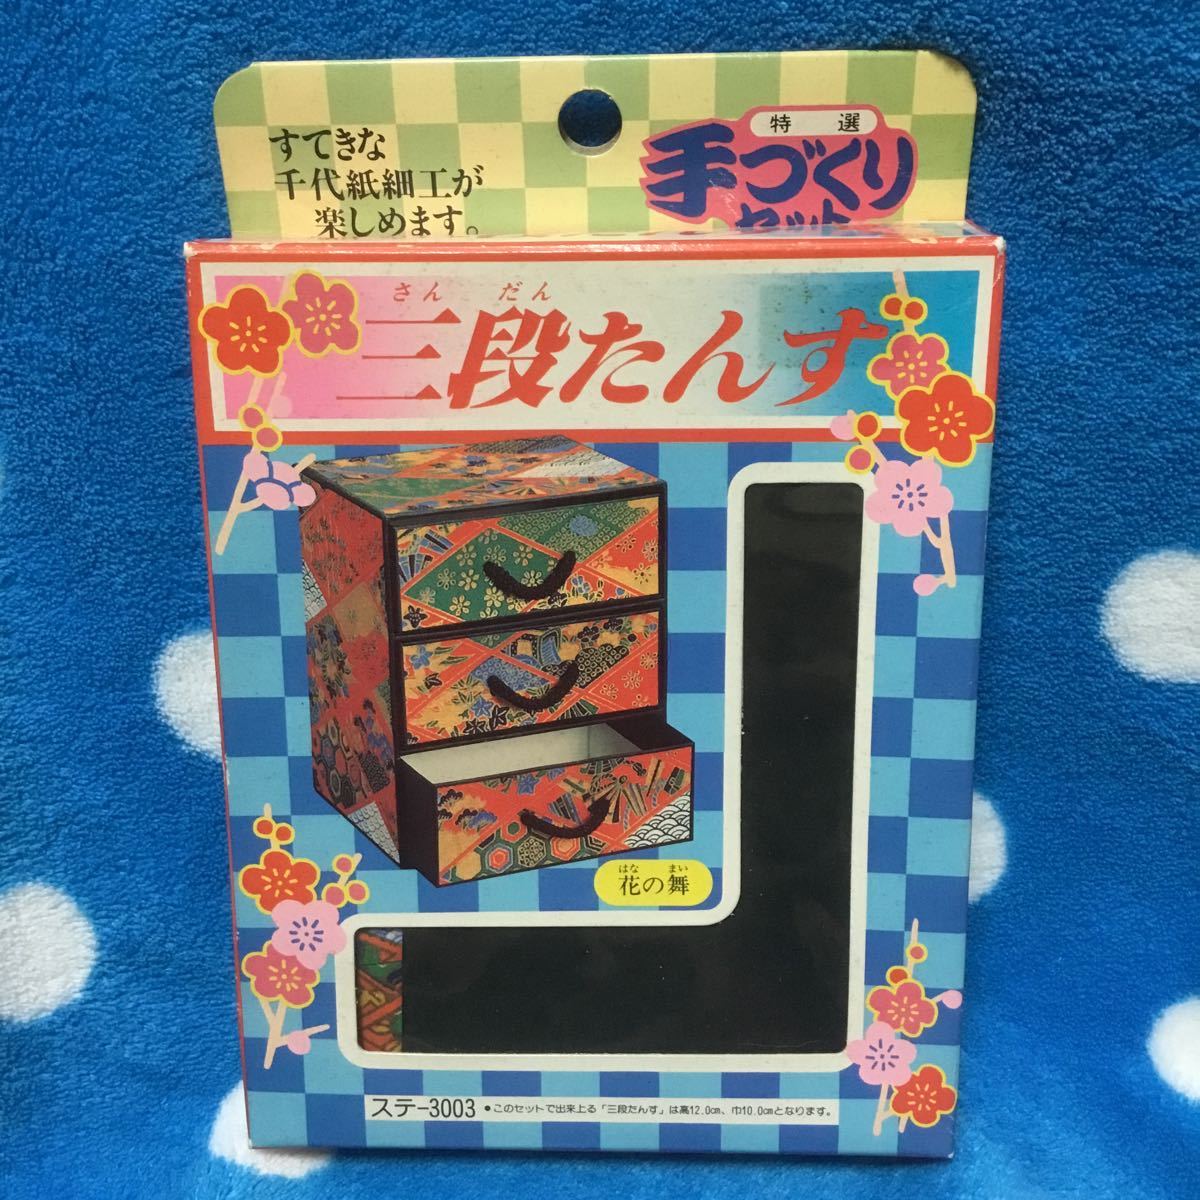 Chiyogami handgefertigtes Bastelset, dreistufige Kommode mit Blumentanzmuster, Handwerk, Handwerk, Papierhandwerk, Origami, Chiyogami